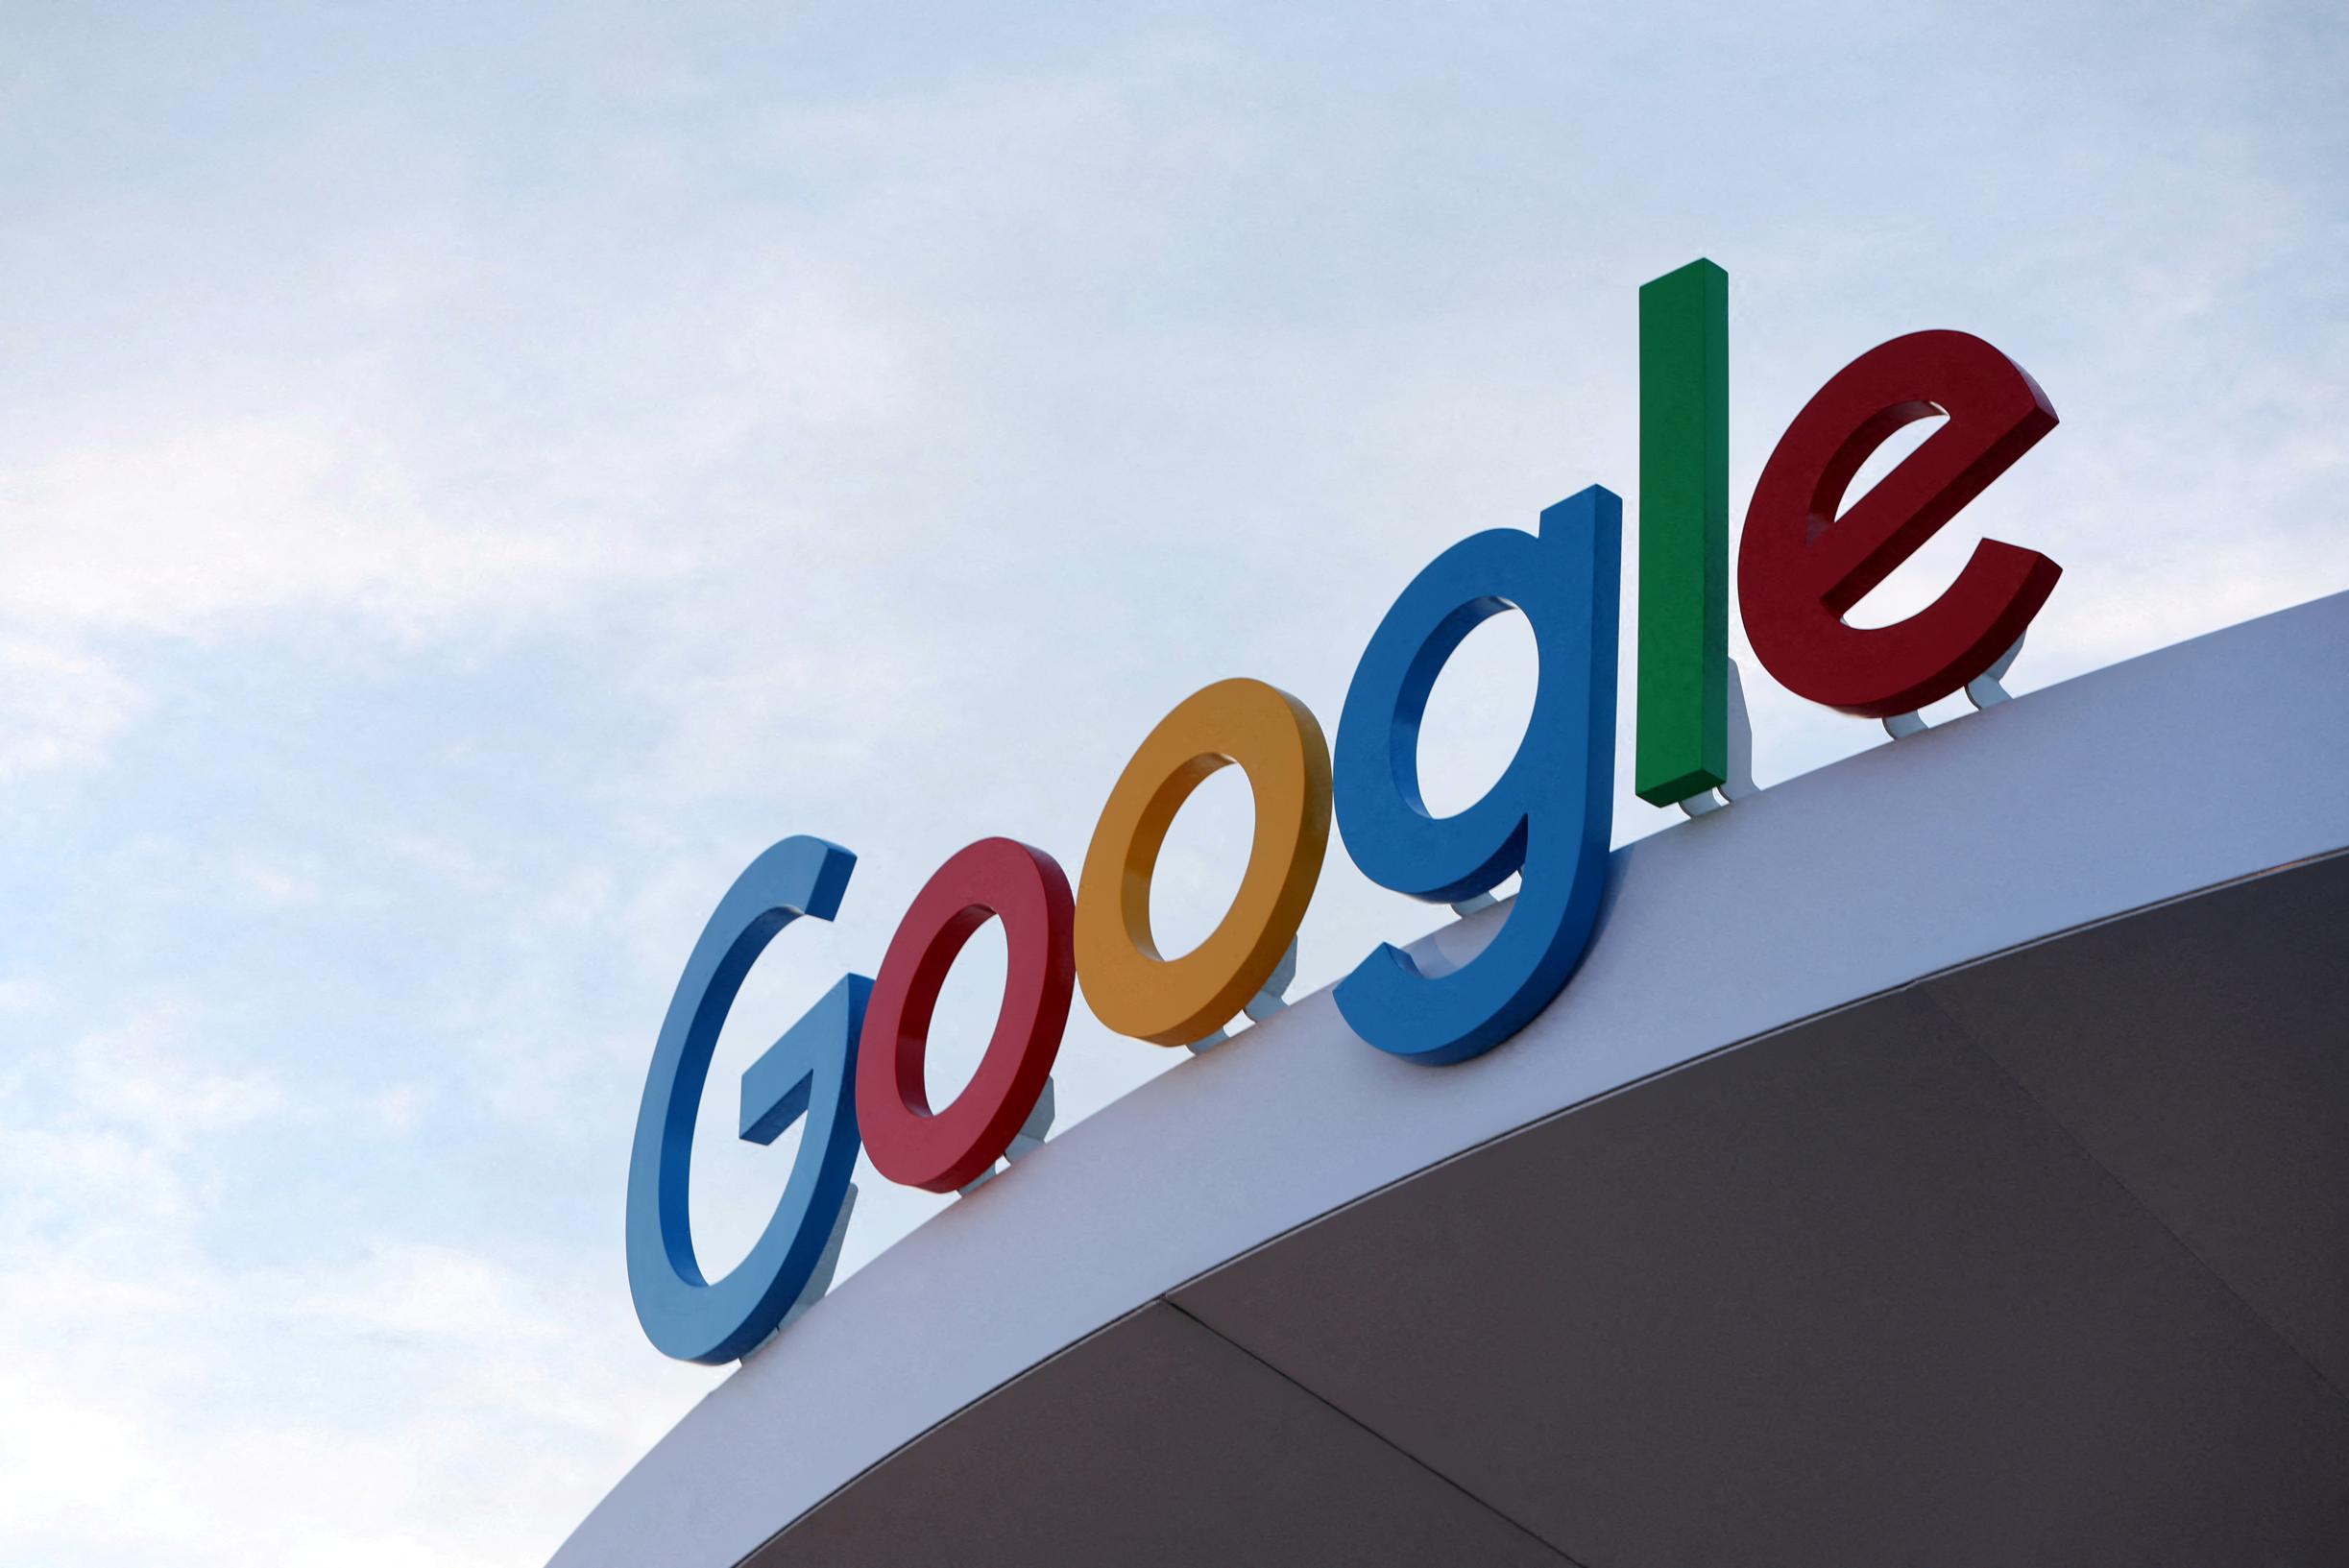 Google, Mediahuis, DPG Media, Roularta ve diğer medya şirketlerinden 2,1 milyar dolarlık taleple karşı karşıya